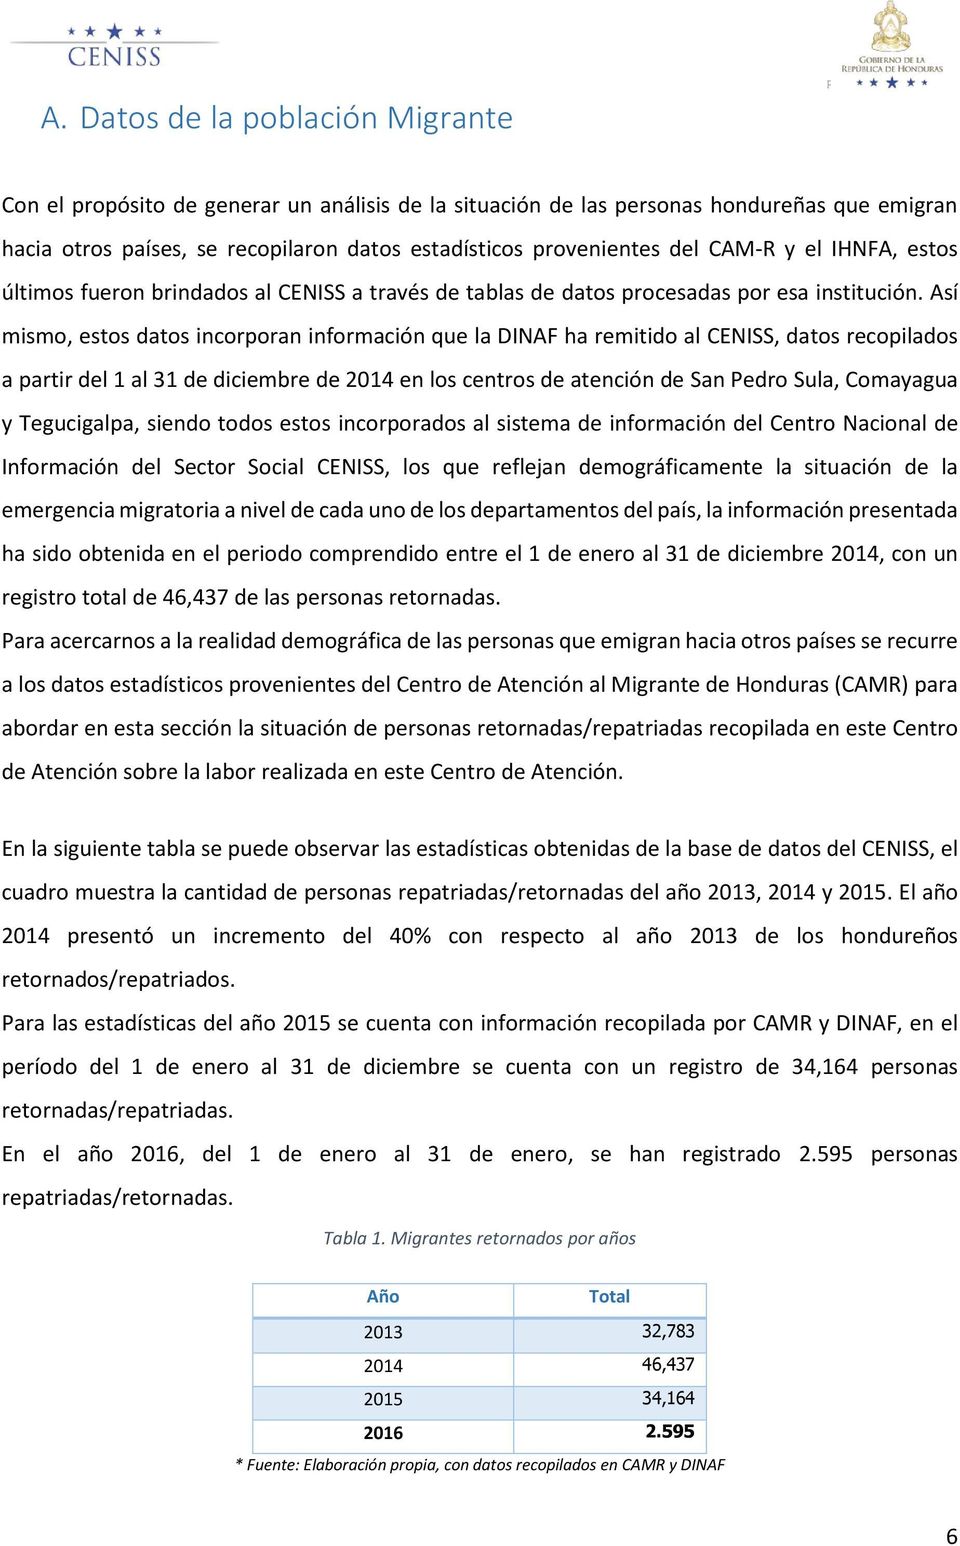 Así mismo, estos datos incorporan información que la DINAF ha remitido al CENISS, datos recopilados a partir del 1 al 31 de diciembre de 2014 en los centros de atención de San Pedro Sula, Comayagua y